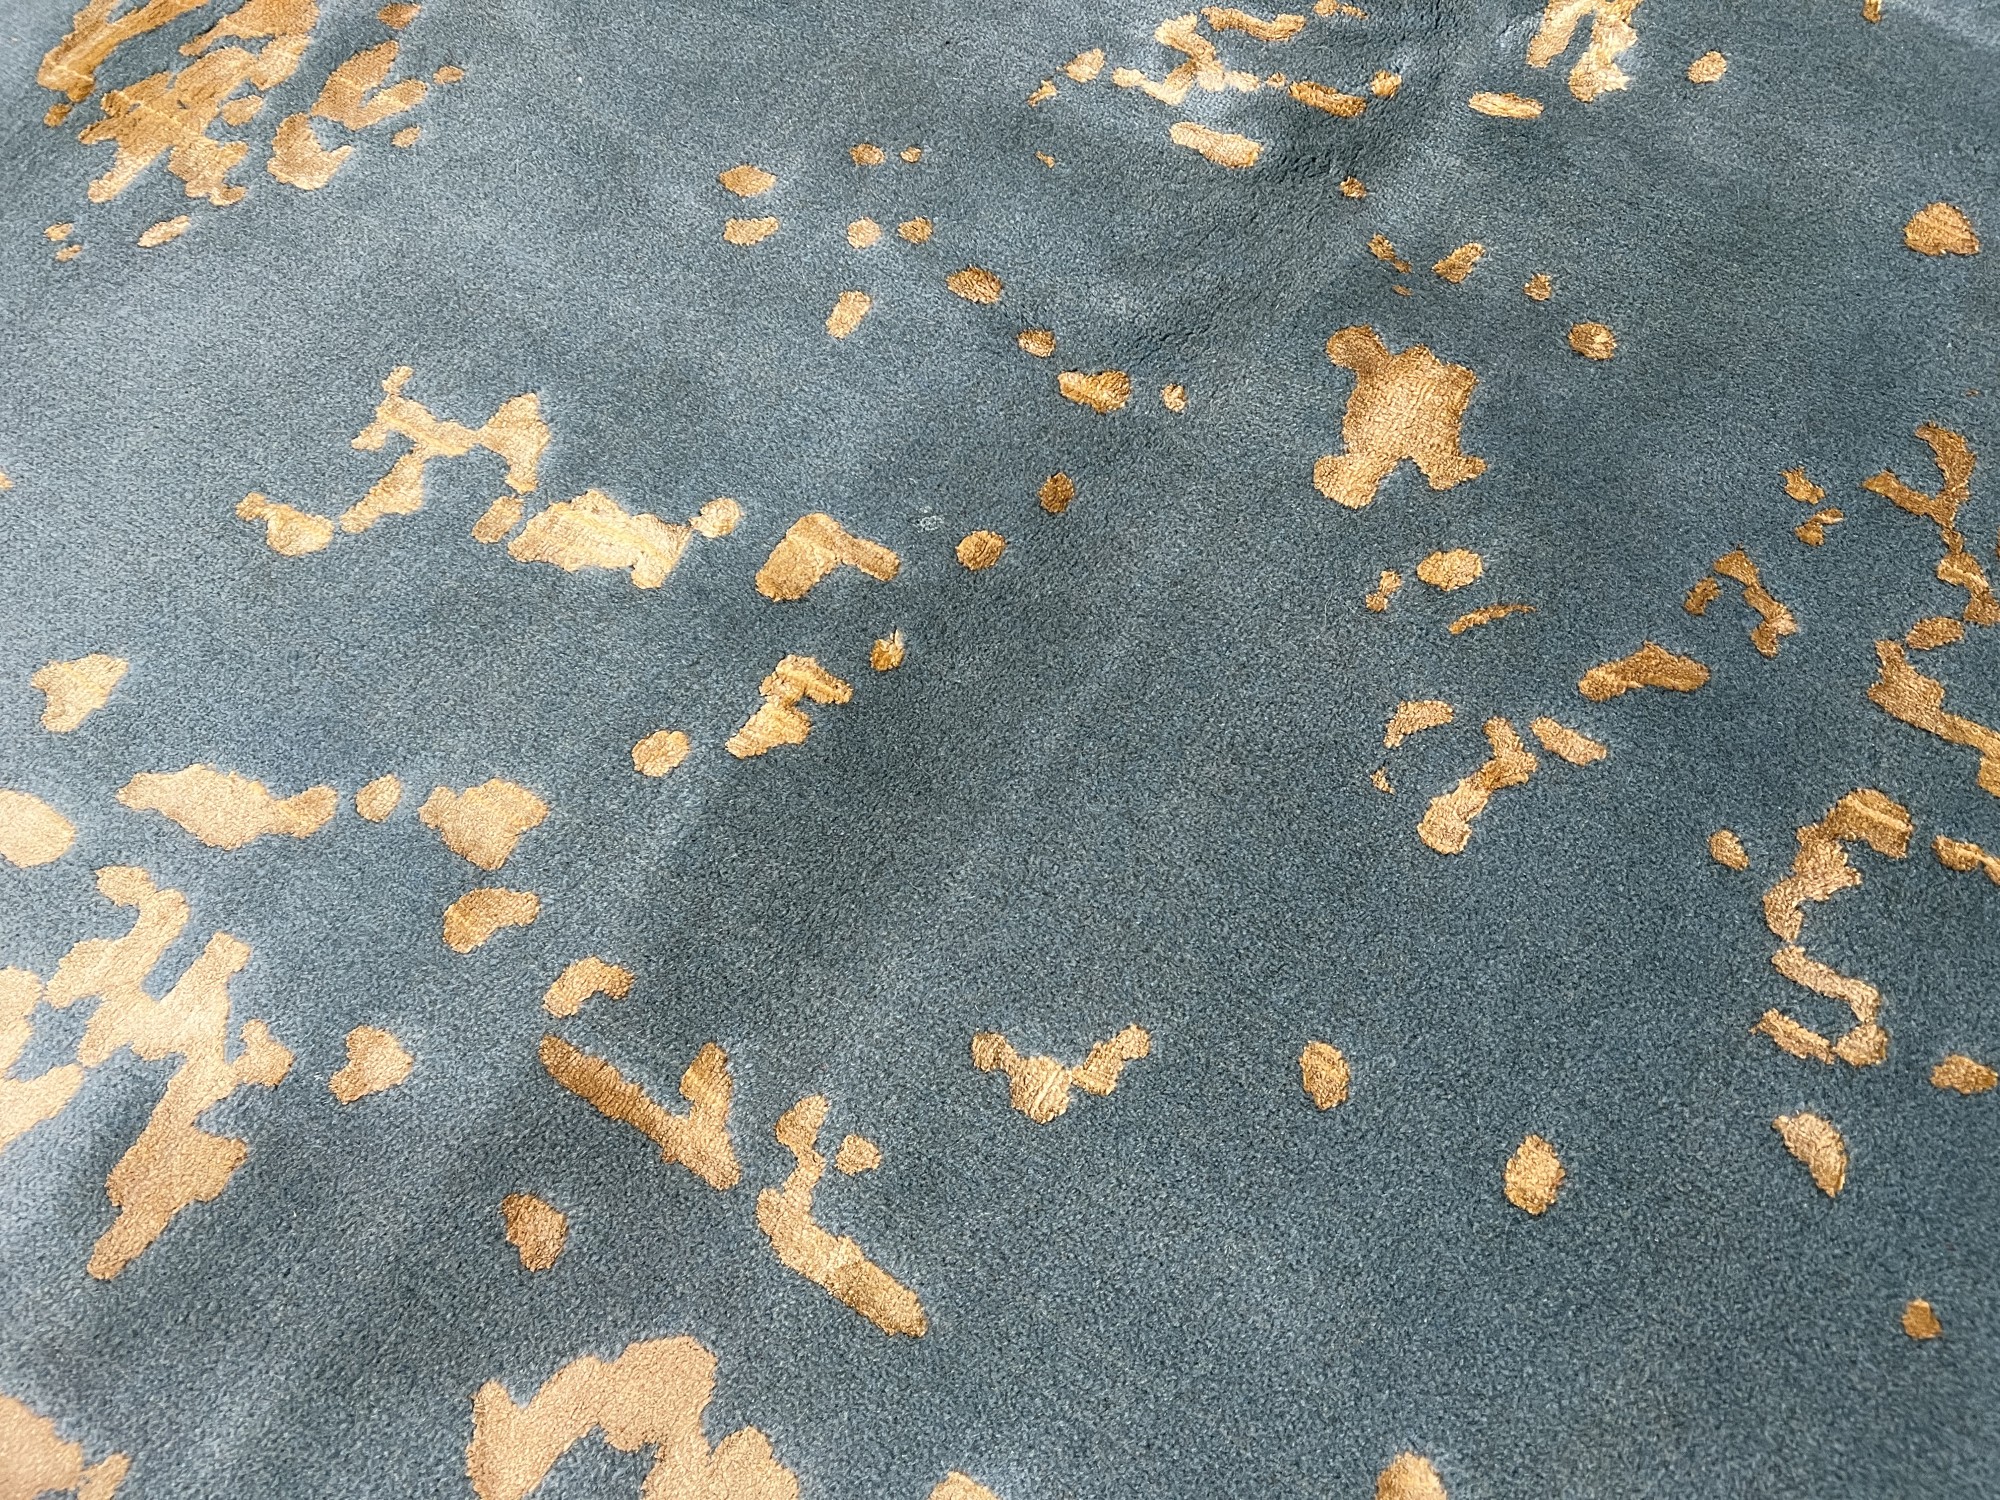 فرش پشمی ماشینی طبیعی و ارگانیک کد 0097 - زمینه آبی پر رنگ - حاشیه آبی پر رنگ